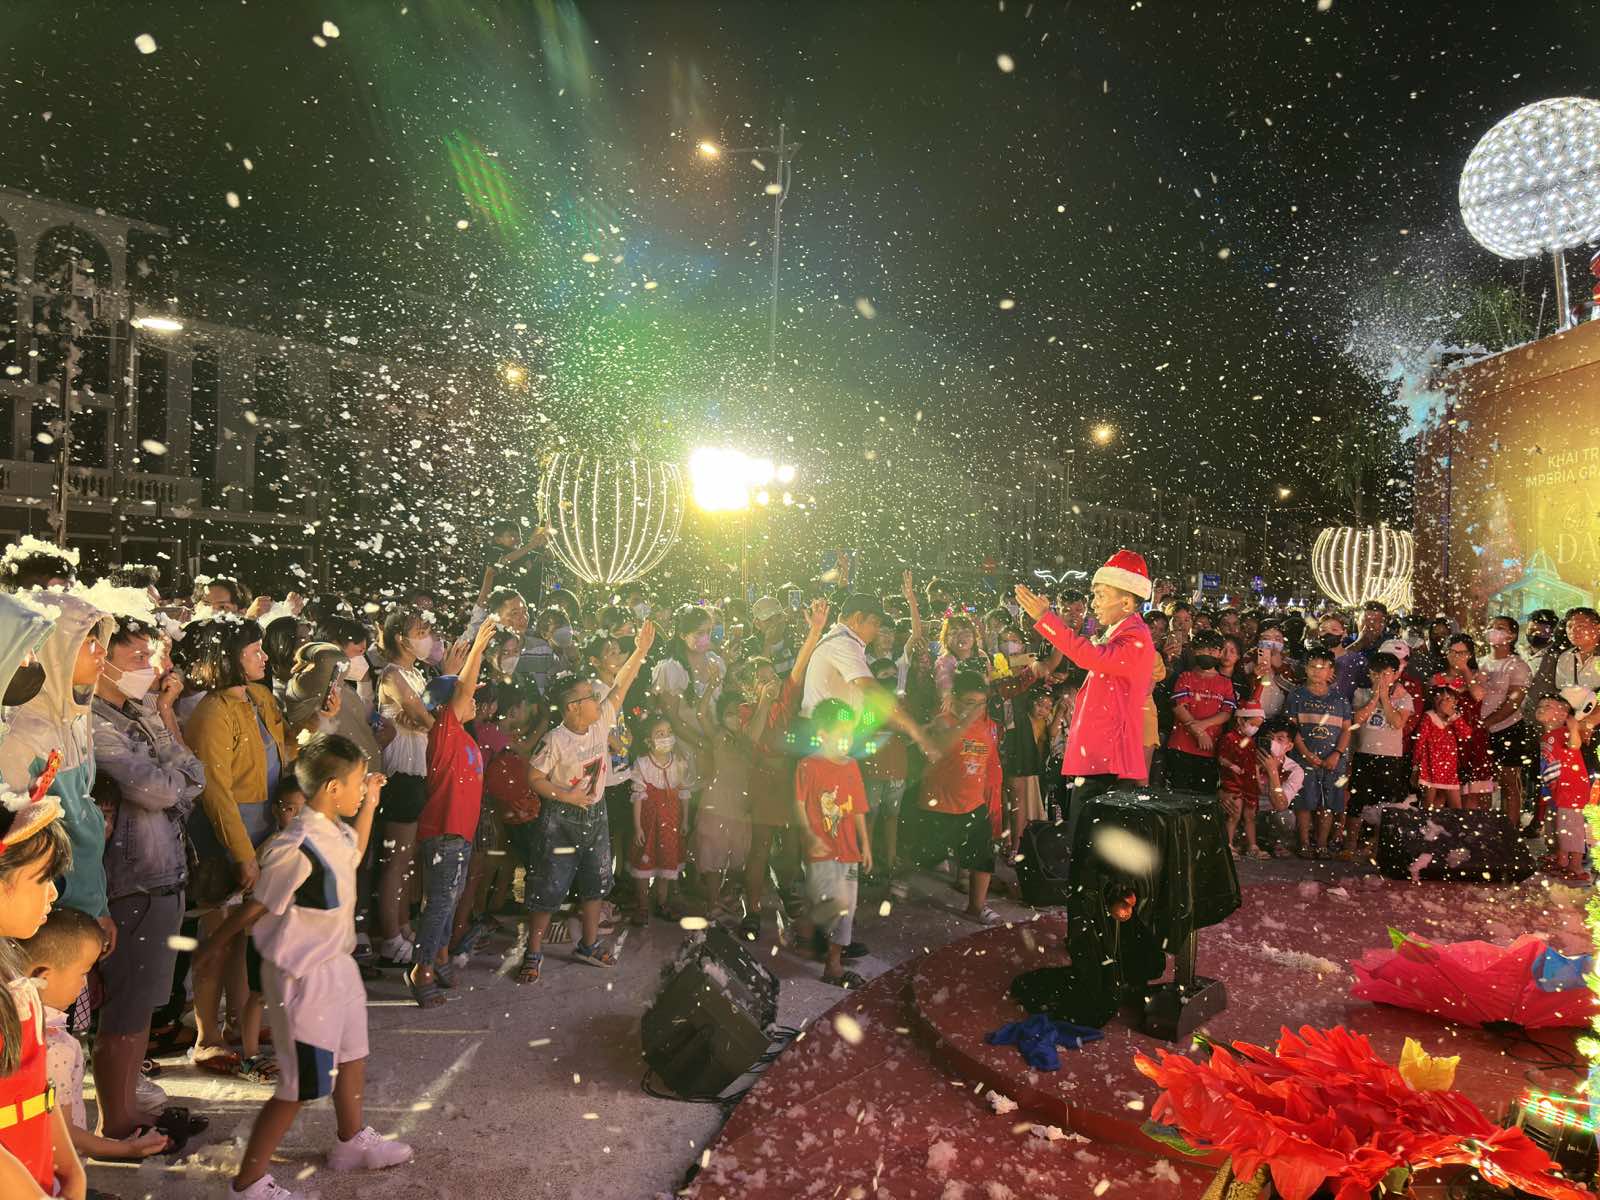 Sắc màu Noel lung linh trong chuỗi sự kiện lễ hội quy mô ở Long An - Ảnh 6.